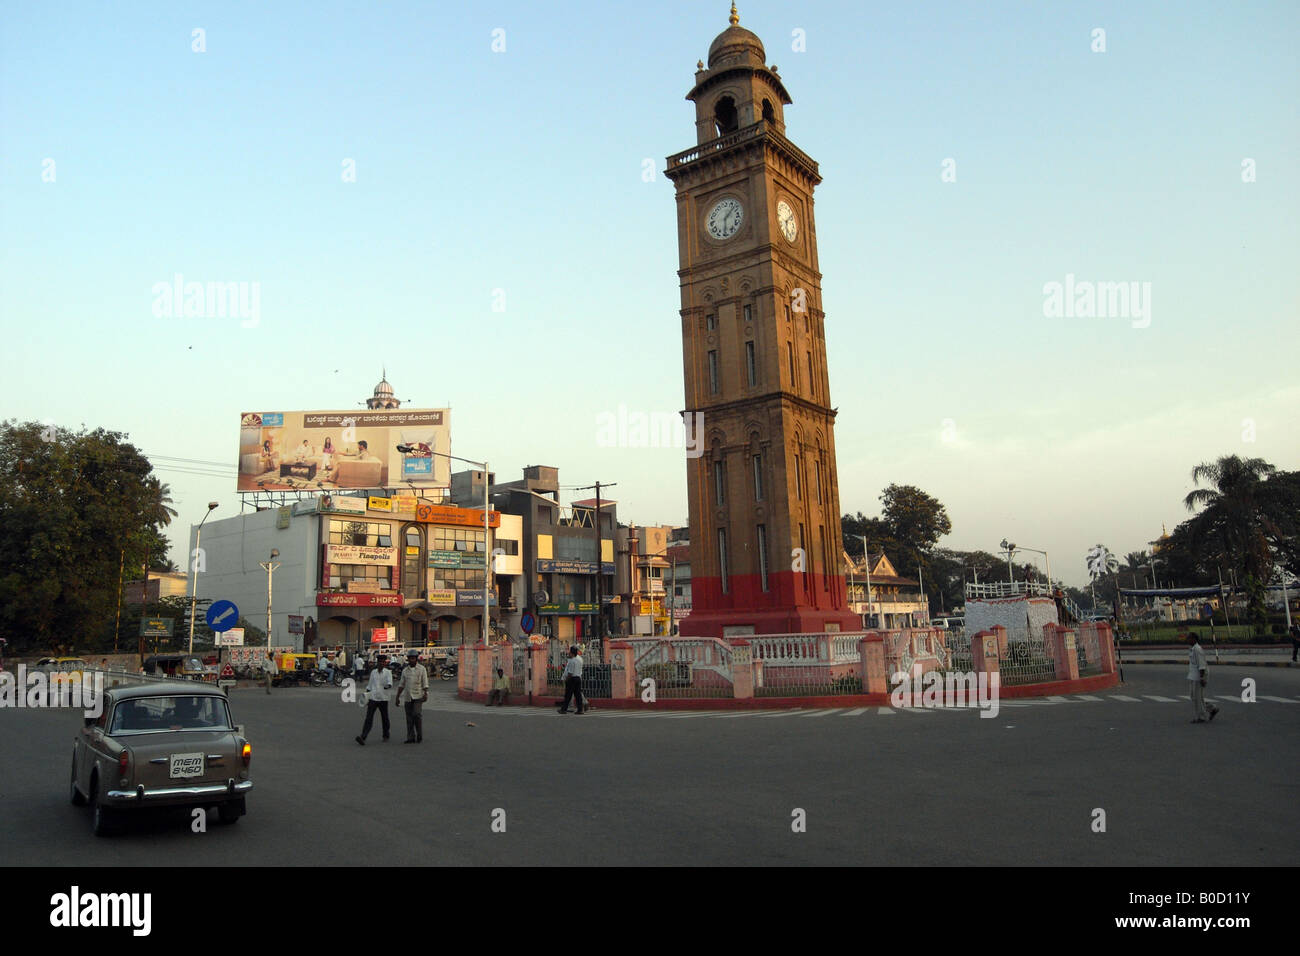 L'ère de l'Empire britannique du jubilé de la tour de l'horloge. Mysore. L'Inde Banque D'Images